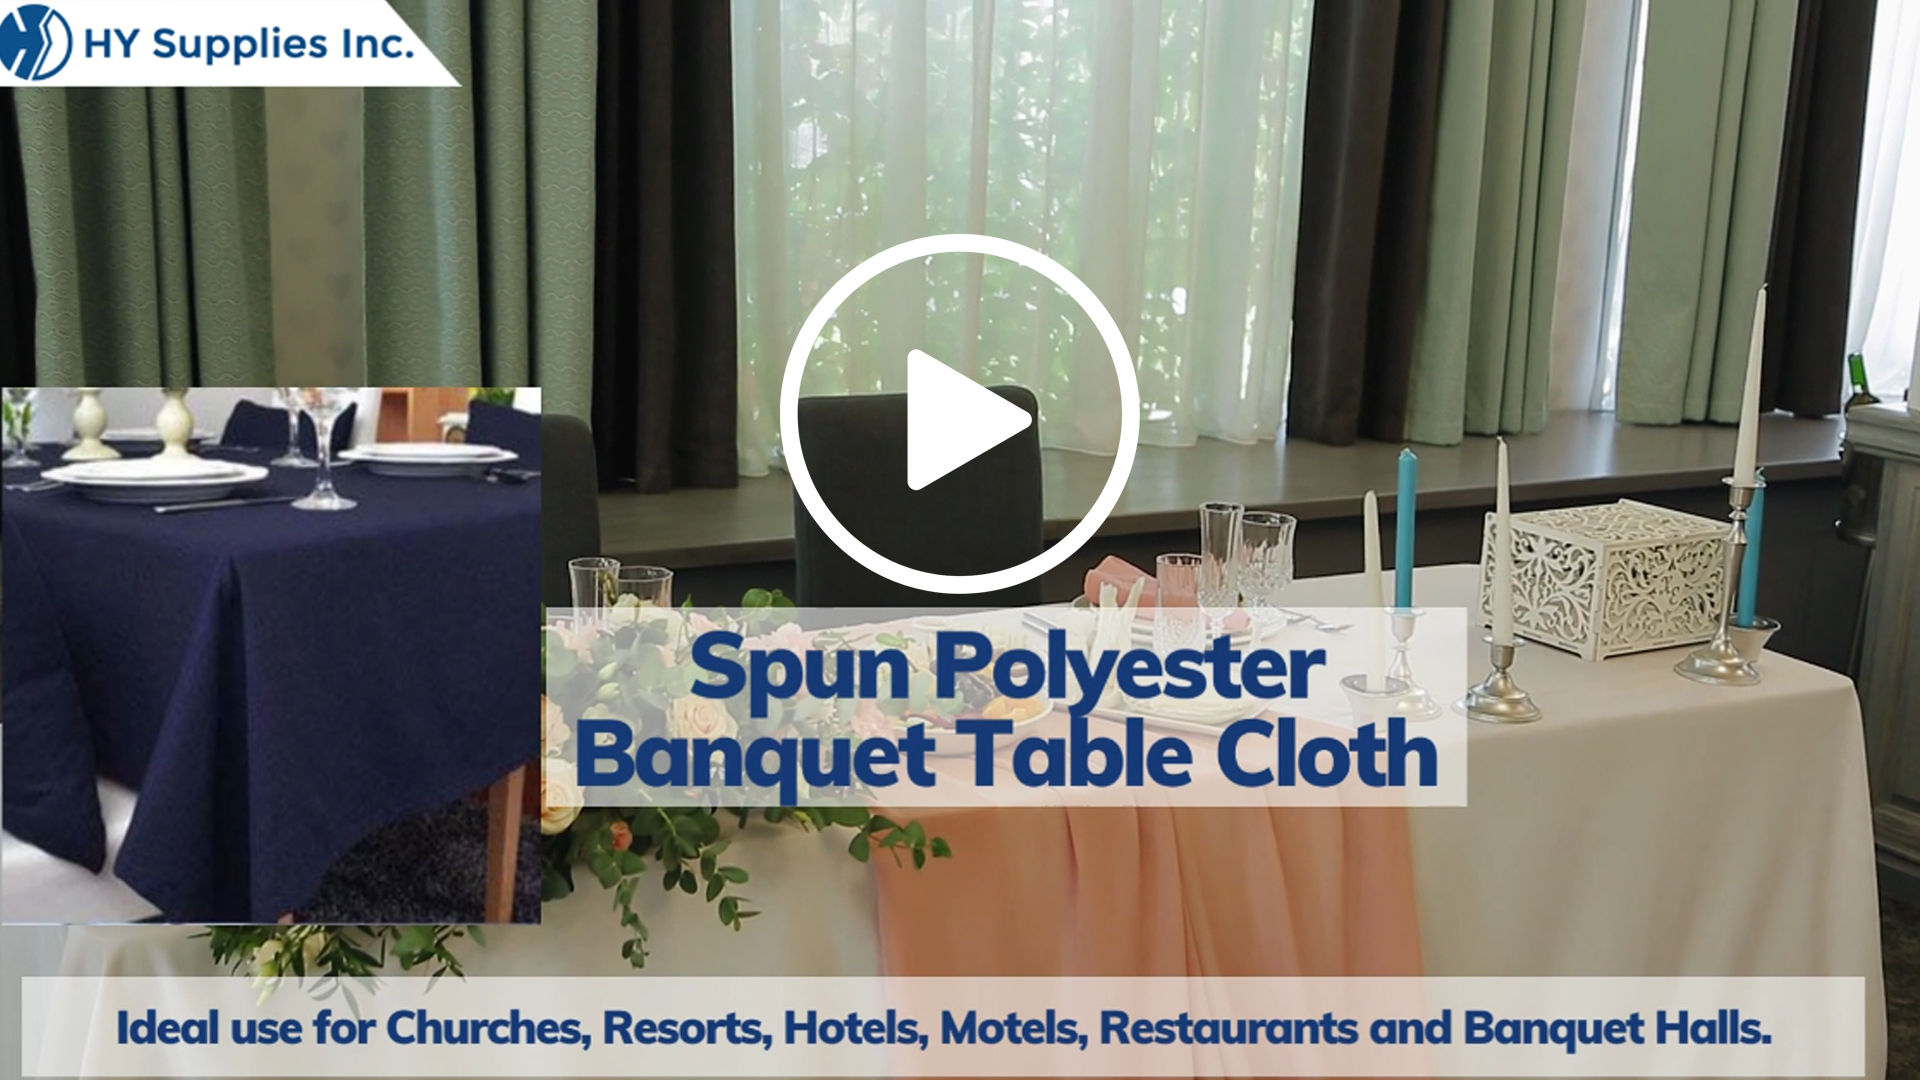 Spun Polyester Banquet Table Cloth